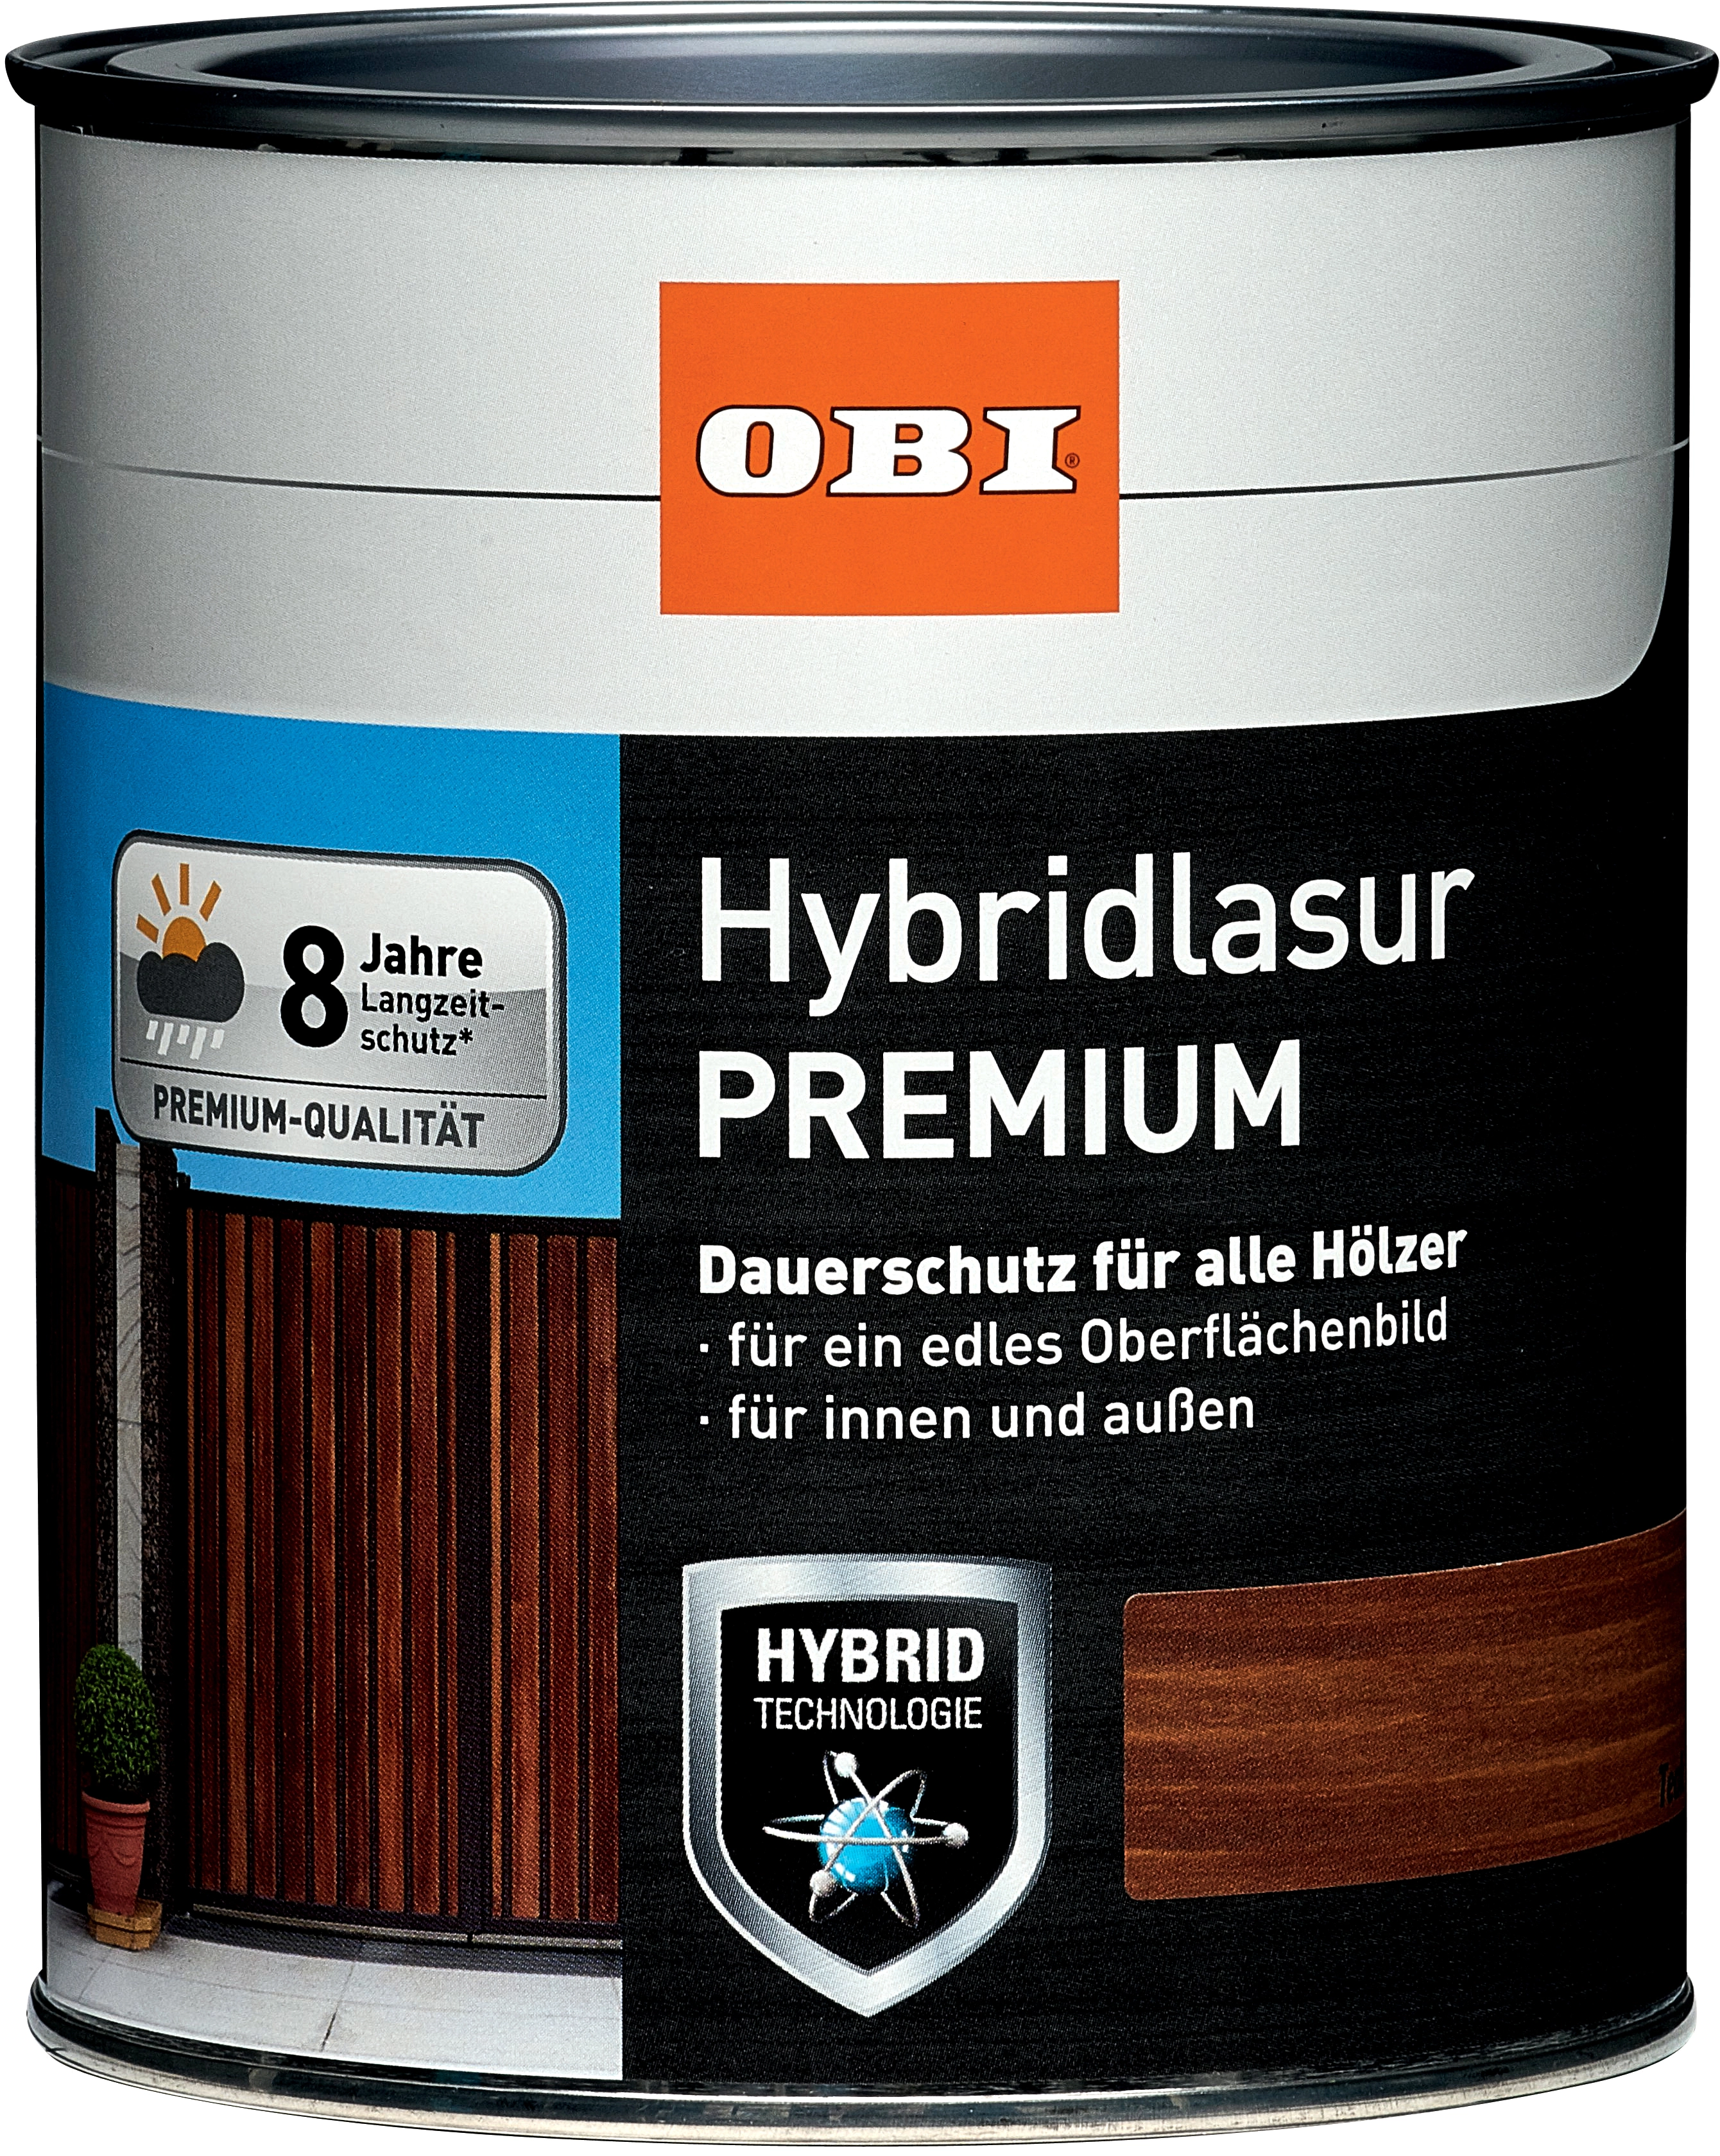 OBI Hybridlasur Premium Nussbaum dunkel 375 ml kaufen bei OBI